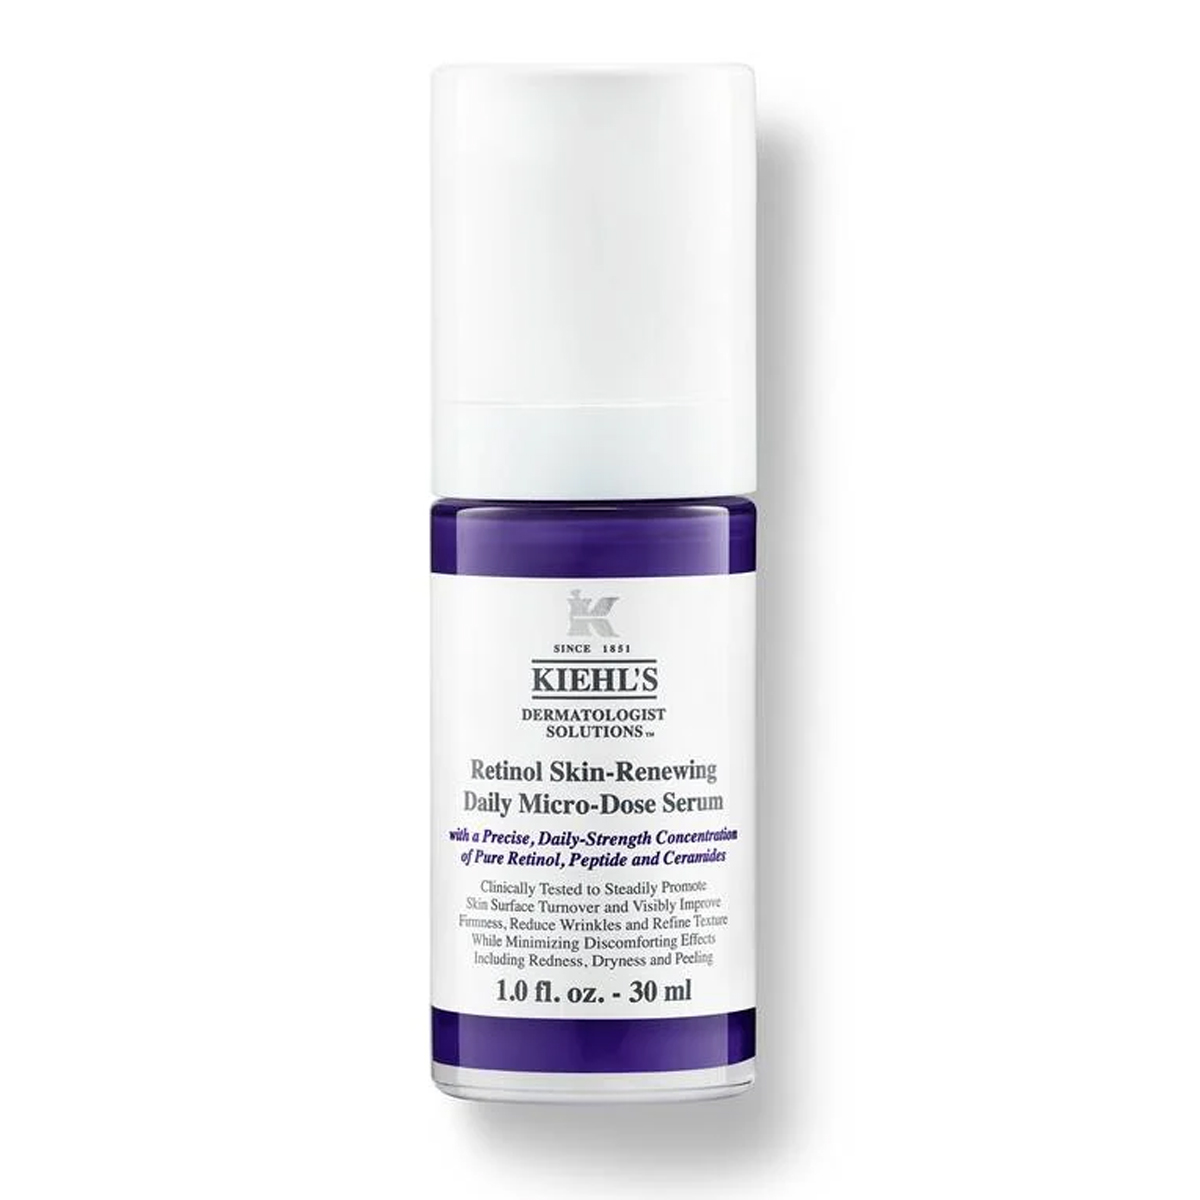 retinol cream for beginners Kiehl's Retinol Skin-Renewing Daily Micro-Dose Serum